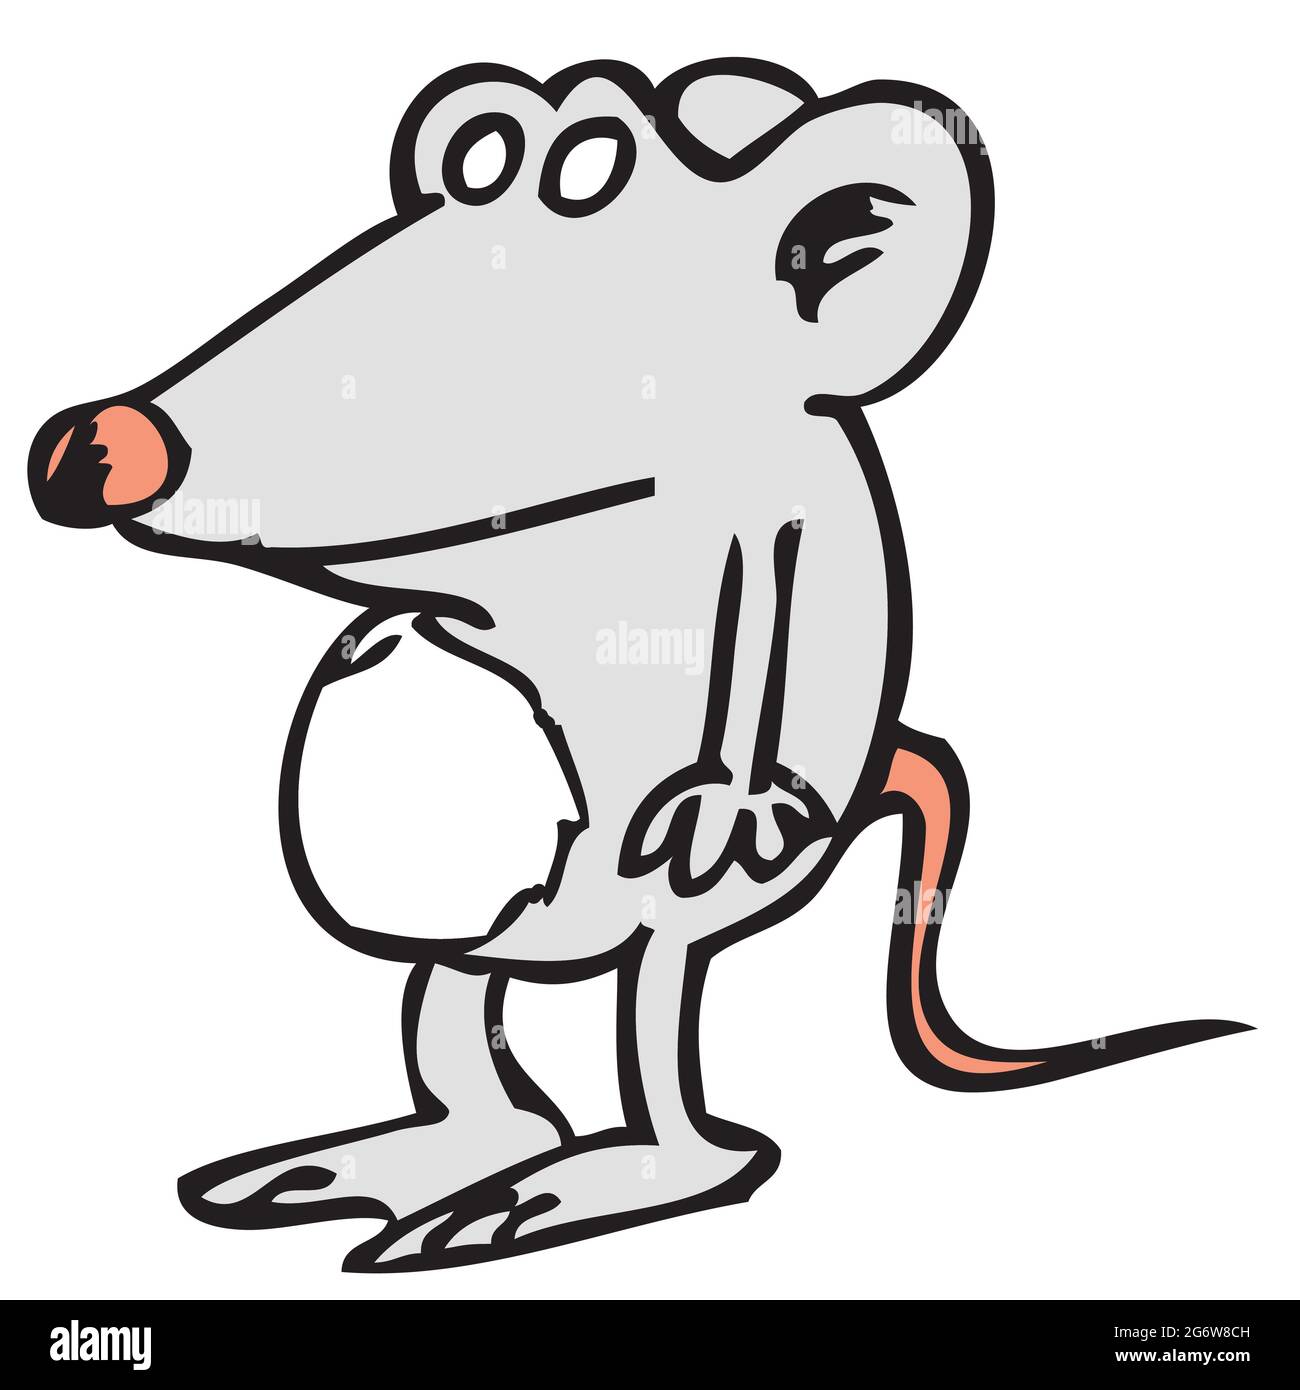 Dessin animé drôle illustration clipart d'une souris Banque D'Images